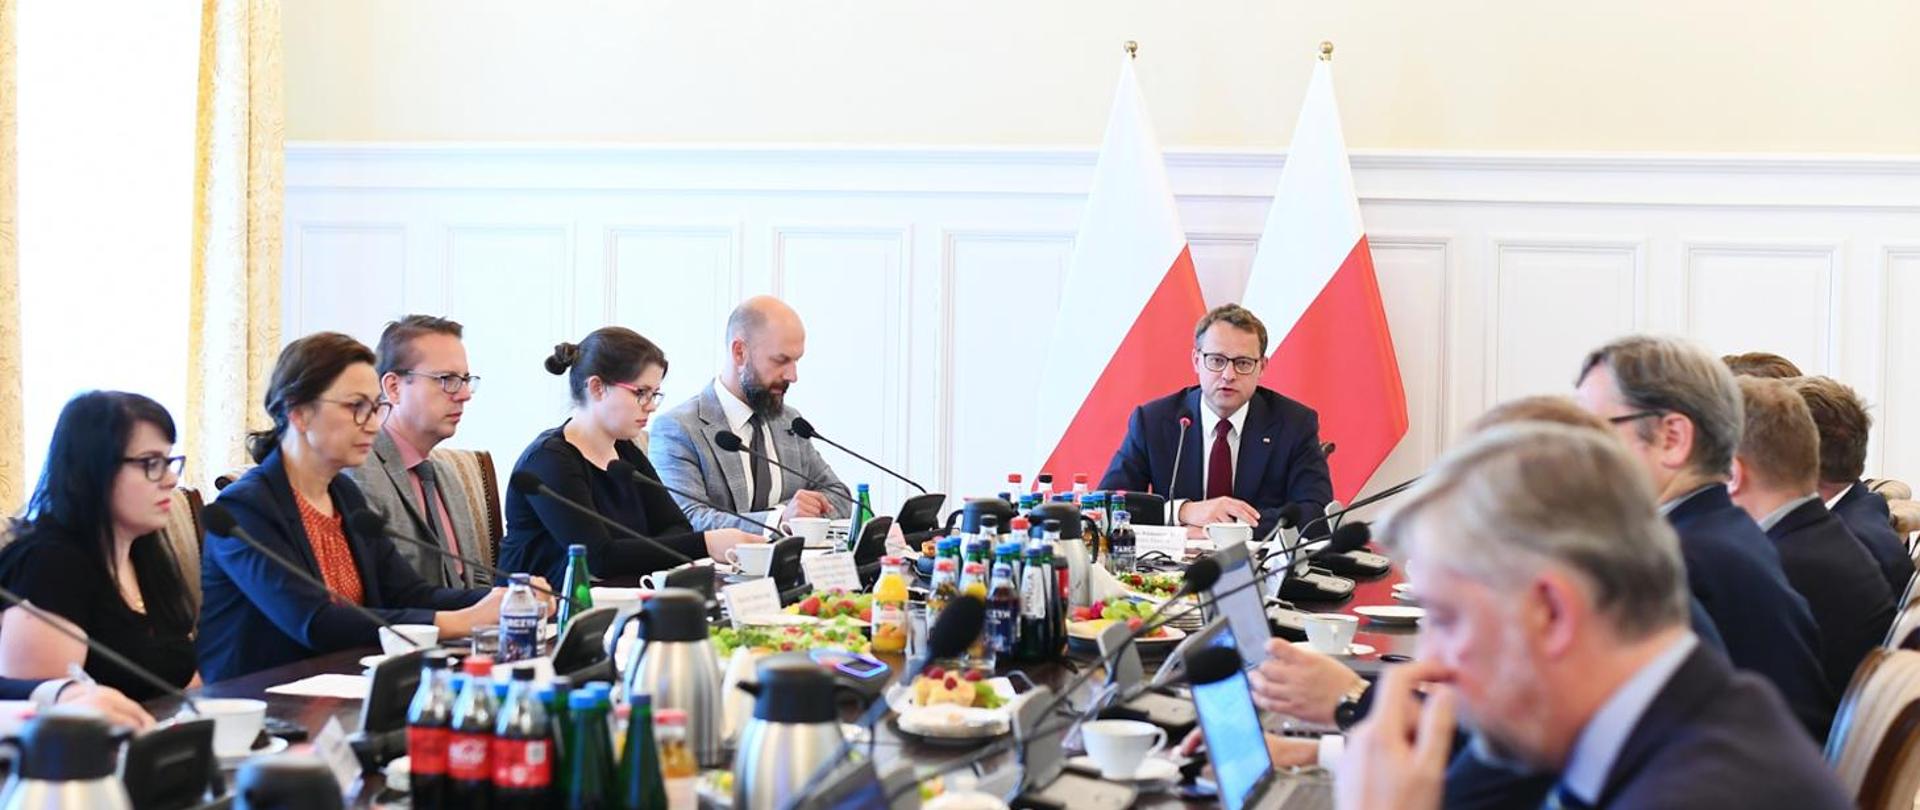 Pan Minister Marcin Romanowski, wraz z członkami Rady przy stole podczas posiedzenia.